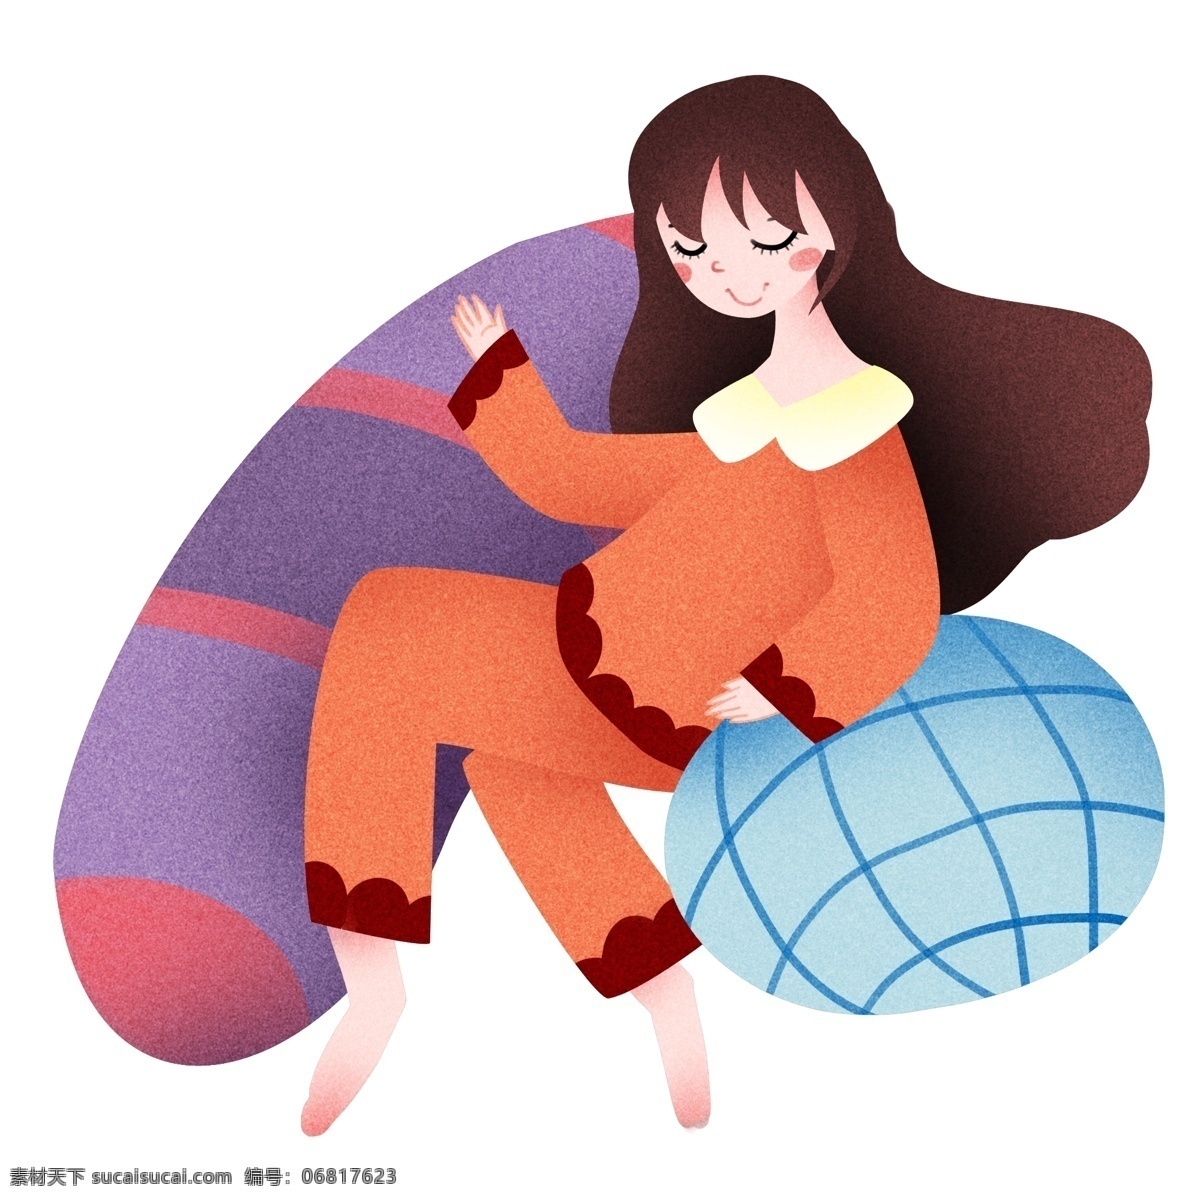 世界 睡眠 日 睡觉 女孩 插画 睡觉的女孩 世界睡眠日 紫色长枕头 可爱的小女孩 节日装饰 创意节日 卡通插画